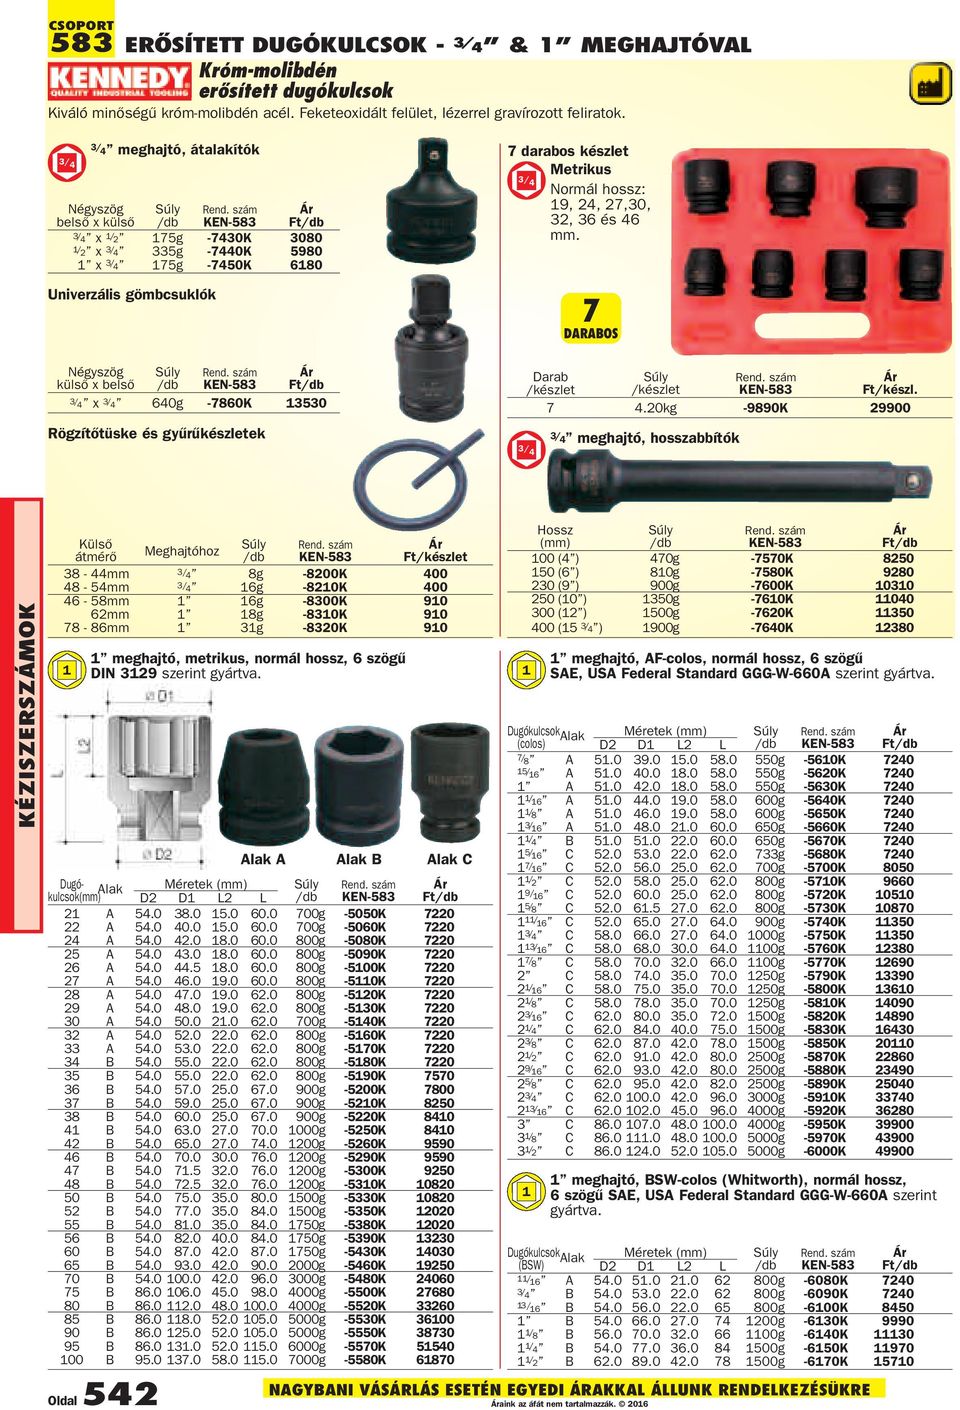 640g -7860K 13530 Rögzítõtüske és gyûrûkészletek 7 darabos készlet Metrikus 3/ 4 Normál hossz: 19, 24, 27,30, 32, 36 és 46 mm. Ft/készl. 7 4.